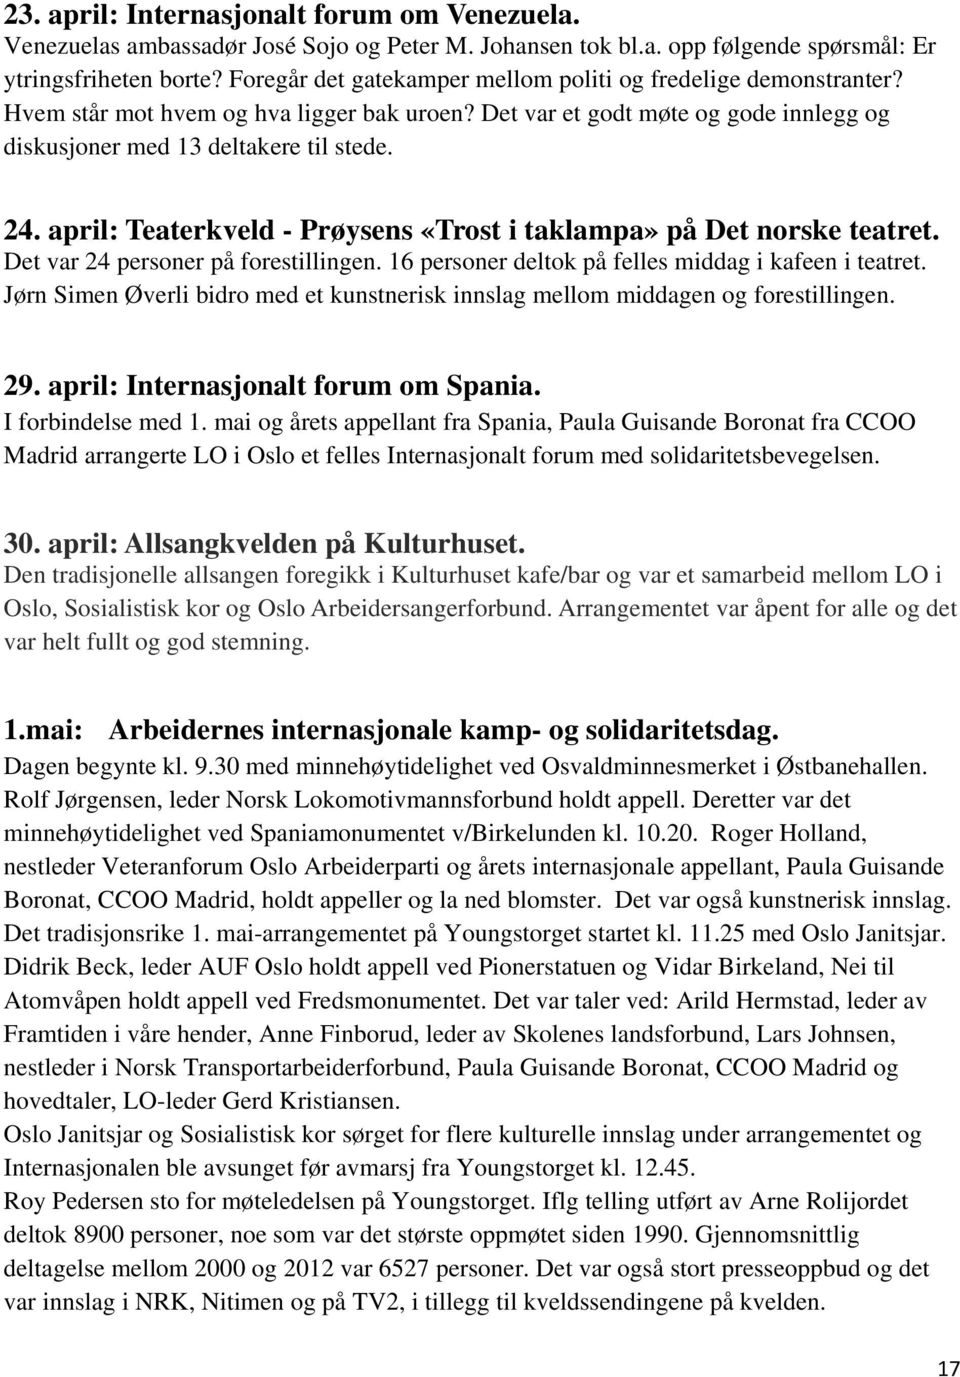 april: Teaterkveld - Prøysens «Trost i taklampa» på Det norske teatret. Det var 24 personer på forestillingen. 16 personer deltok på felles middag i kafeen i teatret.